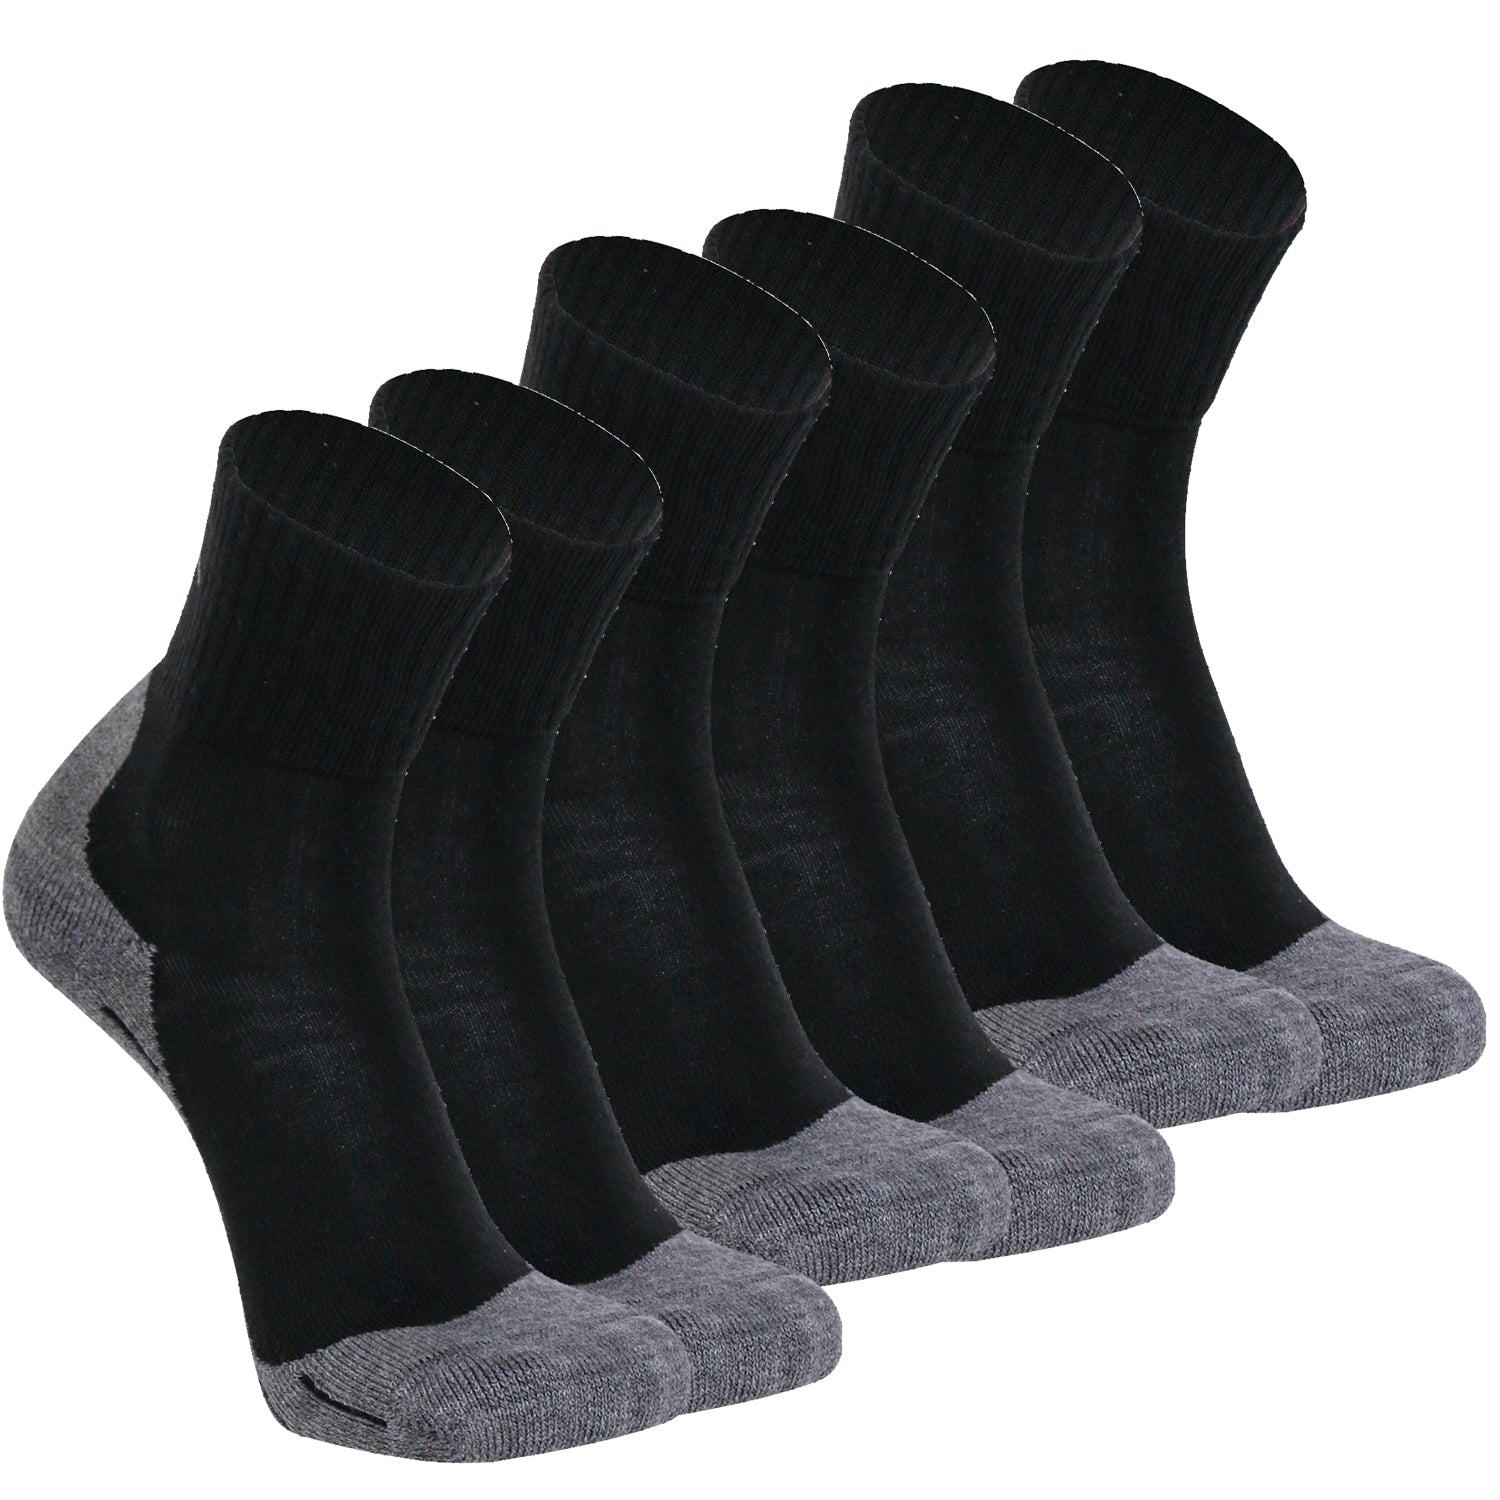 Outdoor Socken für Herren & Damen, Set aus 3 Paar Socken